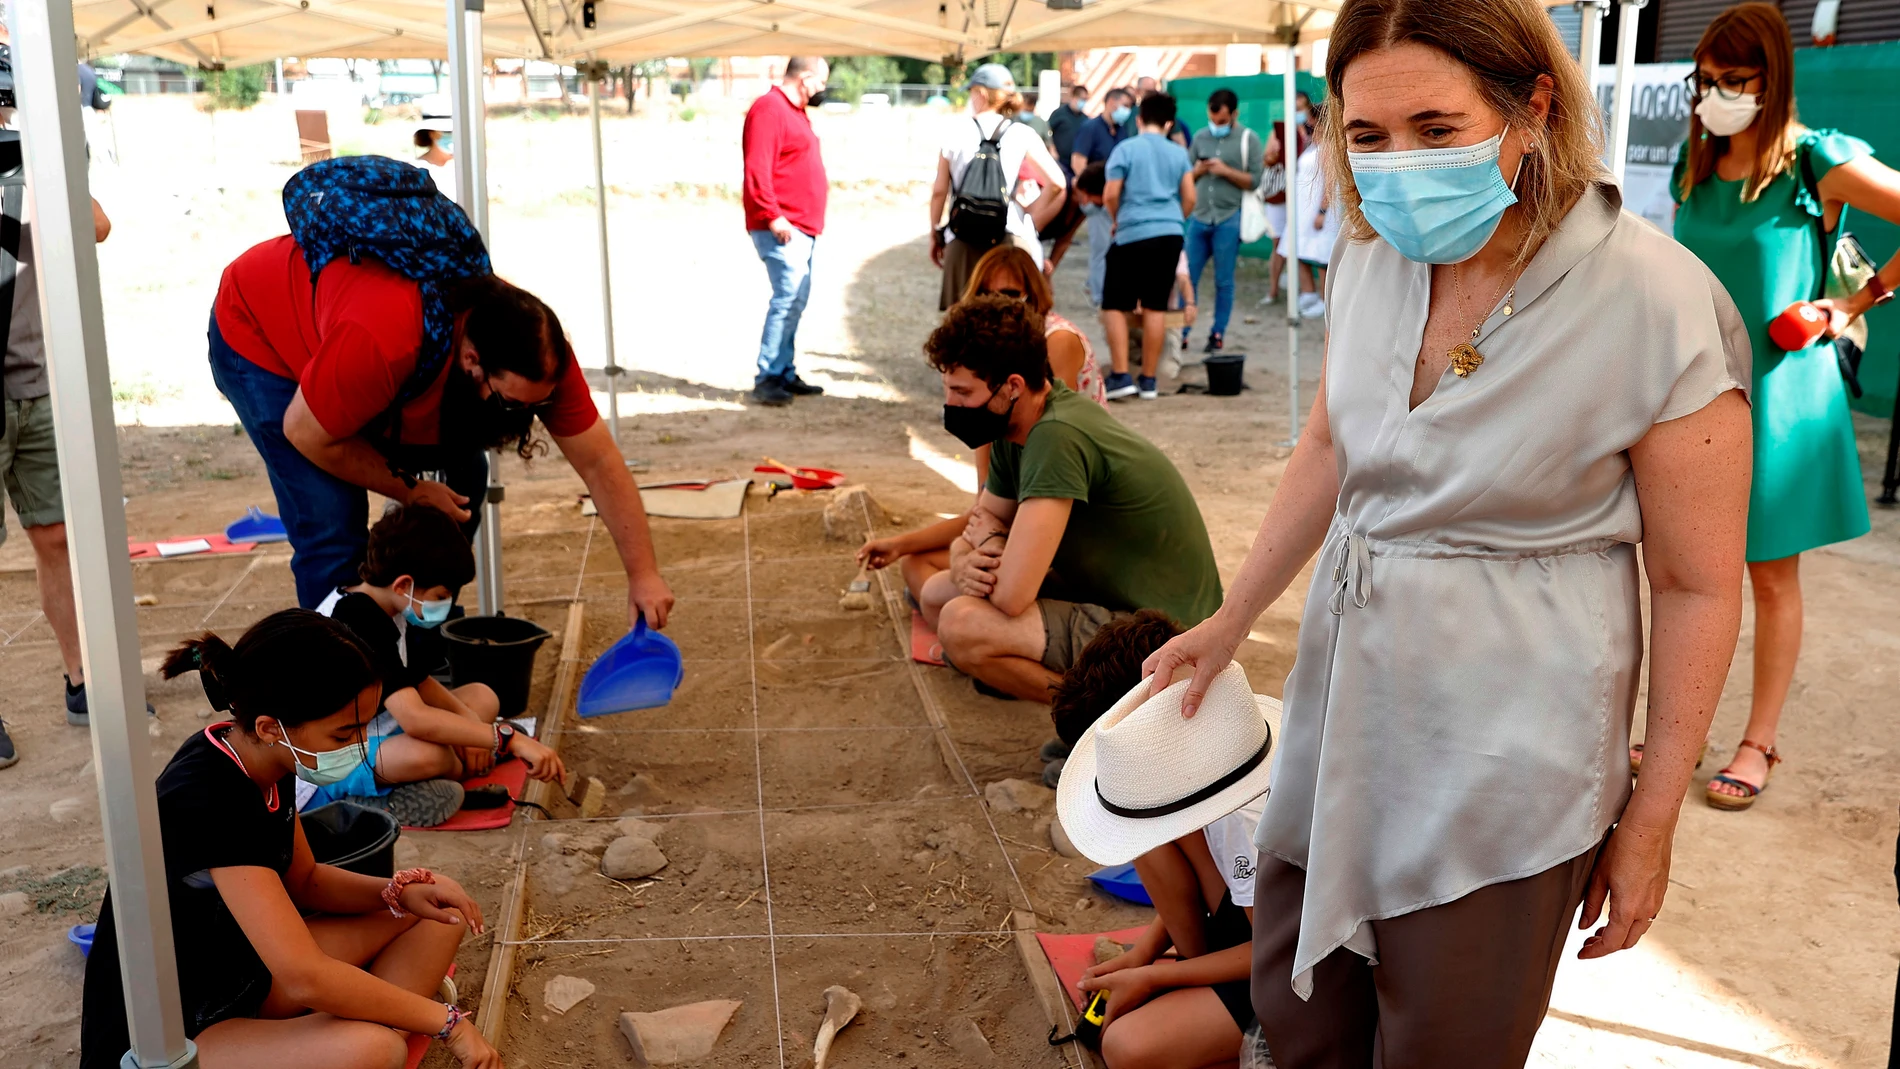 La consejera de Cultura, Turismo y Deporte, Marta Rivera de la Cruz, visita este viernes el yacimiento arqueológico de Complutum, en Alcalá de Henares, donde se desarrolla el programa educativo Arqueólogos por un día